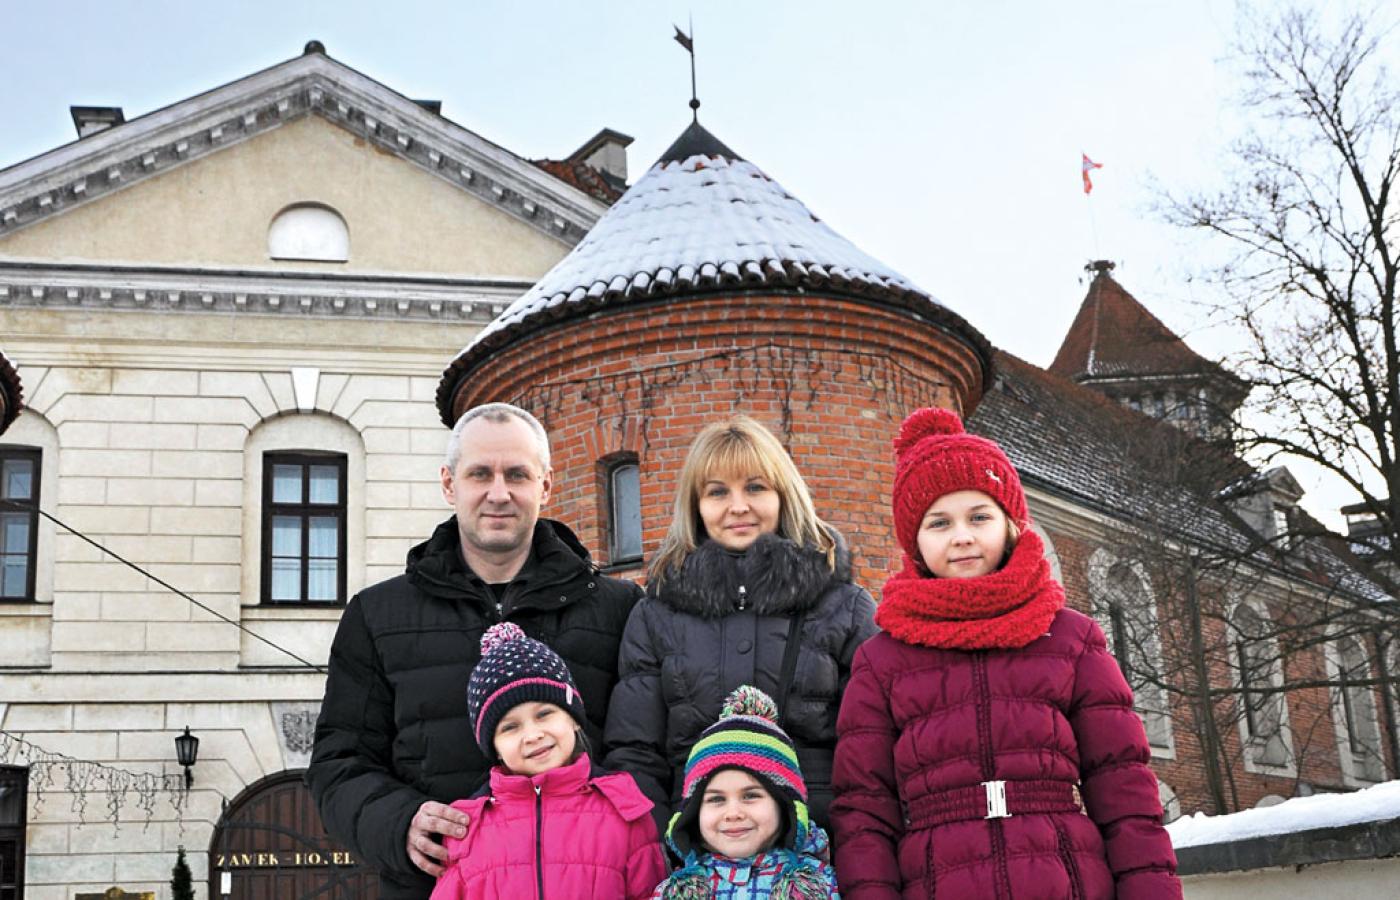 Rodzina Svyrydov, Oleksii i Marina z córkami, przyjechała do Nałęczowa zaproszona za pośrednictwem Kościoła przez polską rodzinę.